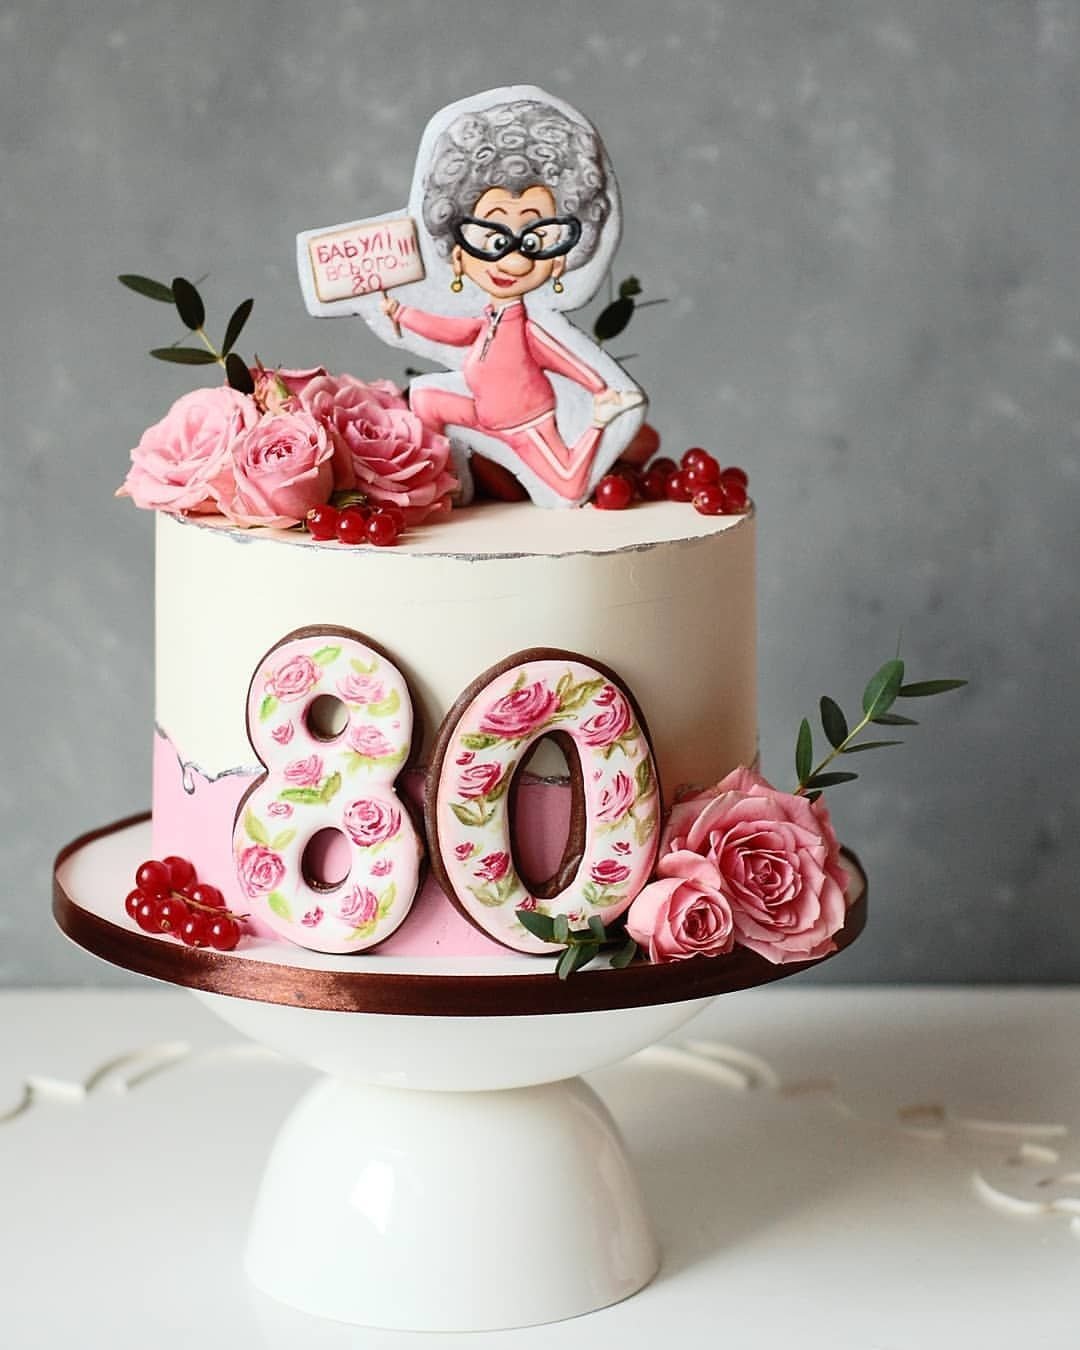 Оформление торта бабушке на юбилей